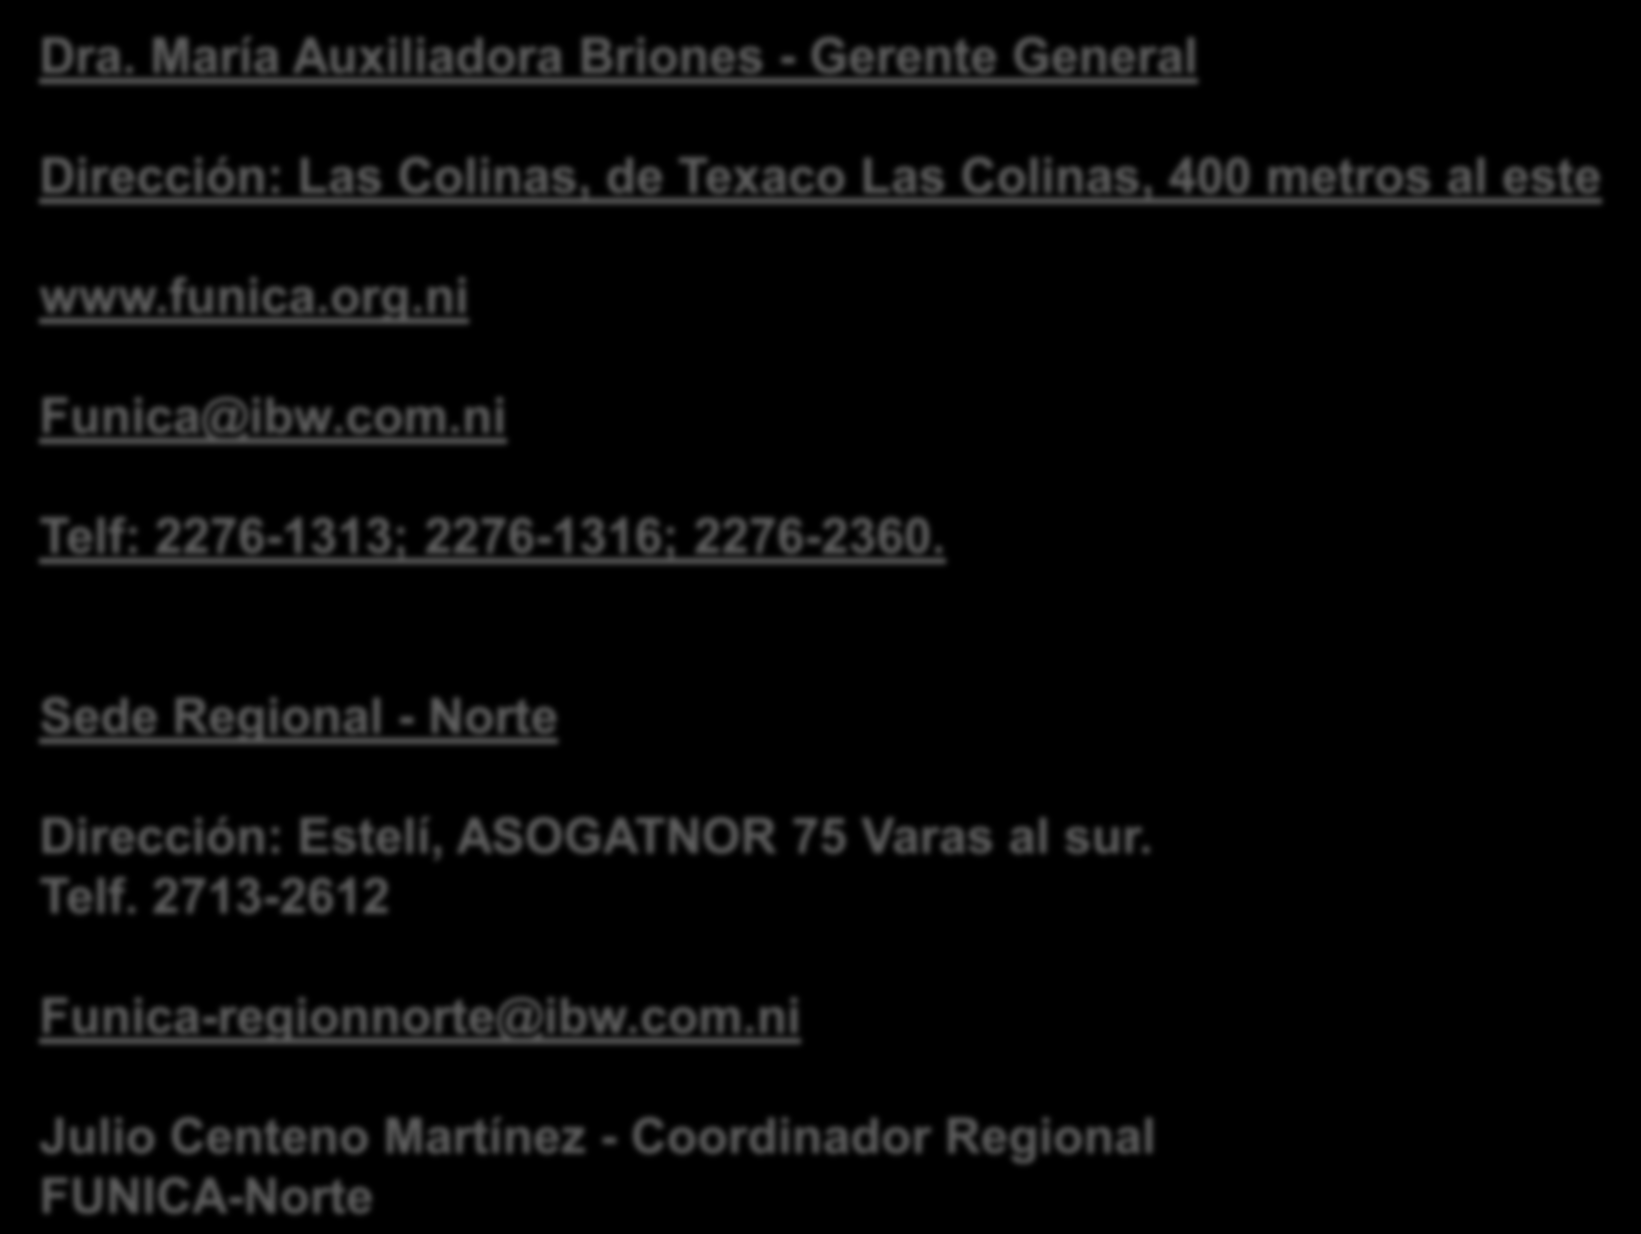 Contactos y direcciones-funica Dra. María Auxiliadora Briones - Gerente General Dirección: Las Colinas, de Texaco Las Colinas, 400 metros al este www.funica.org.ni Funica@ibw.com.